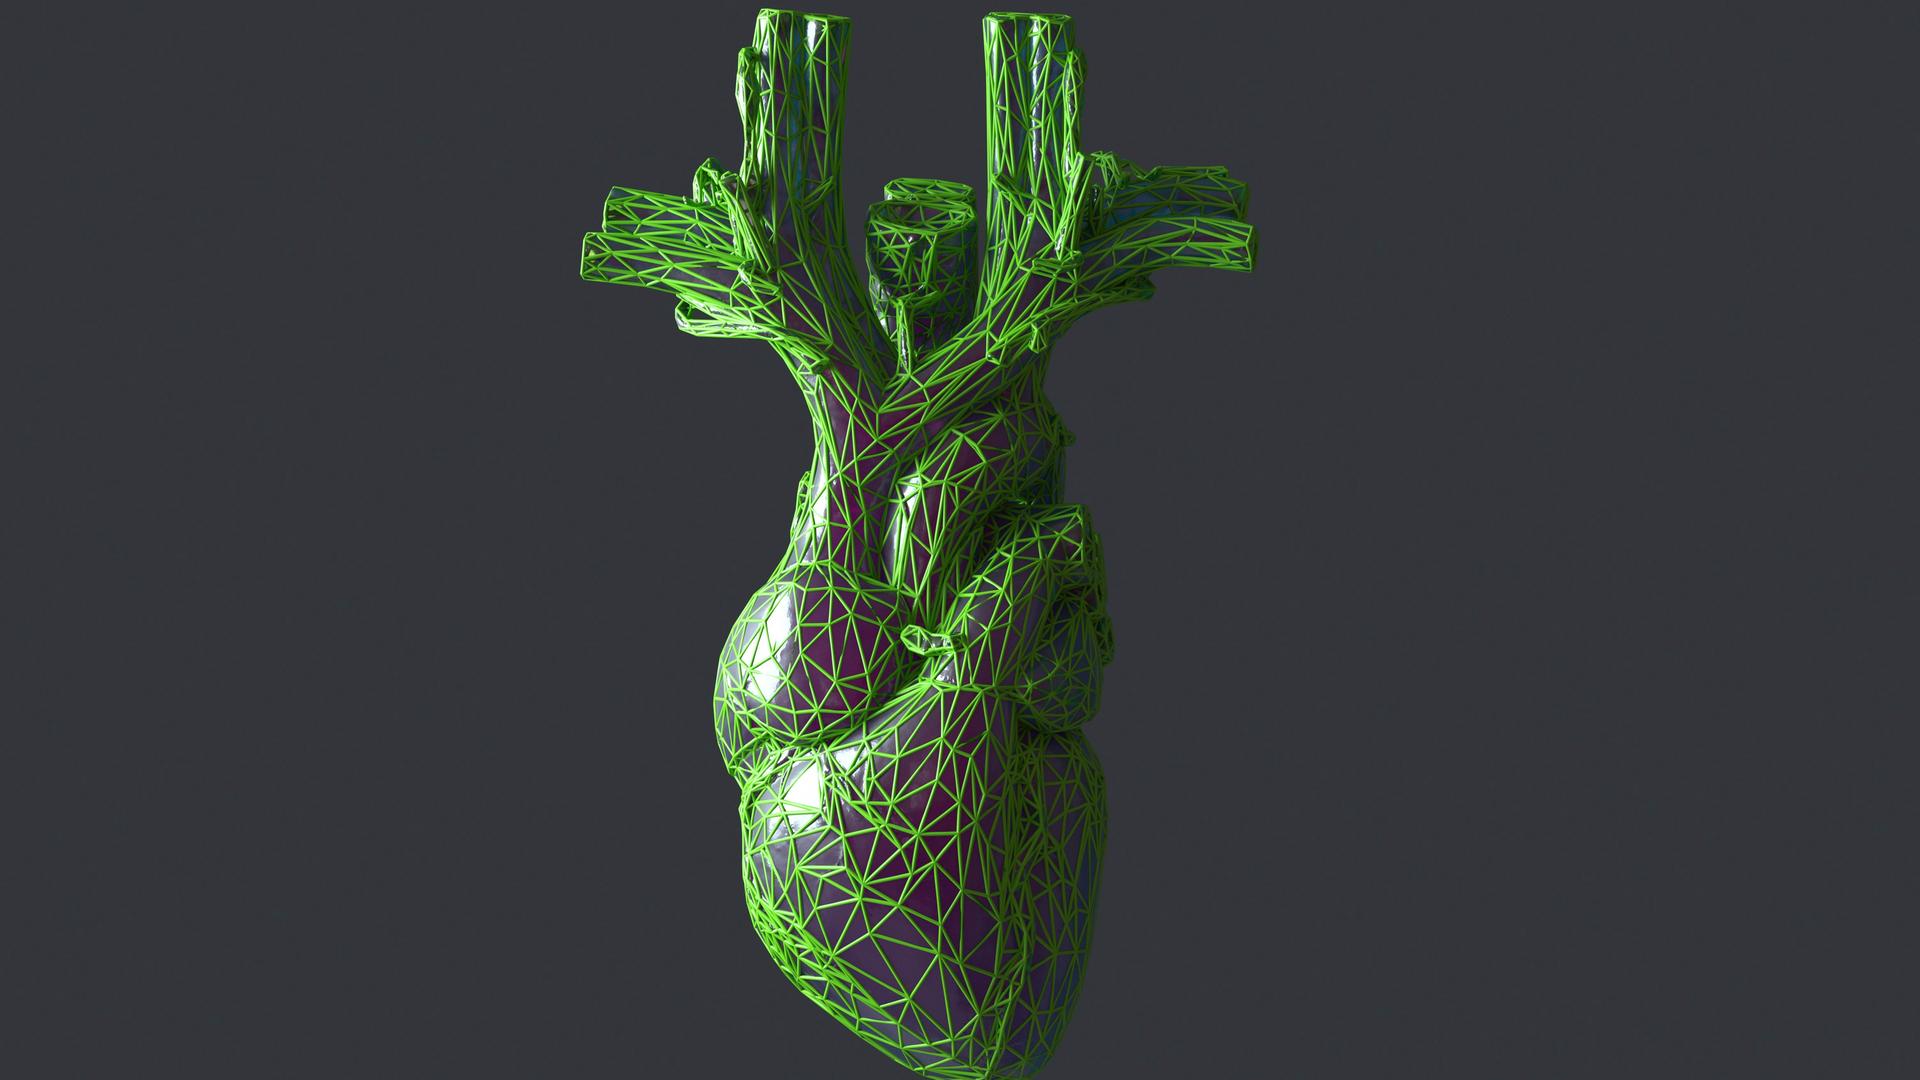 Ein digital generiertes Bild eines Herzens, das von einer netzartigen Struktur umgeben ist, vor dunkelgrauem Hintergrund.